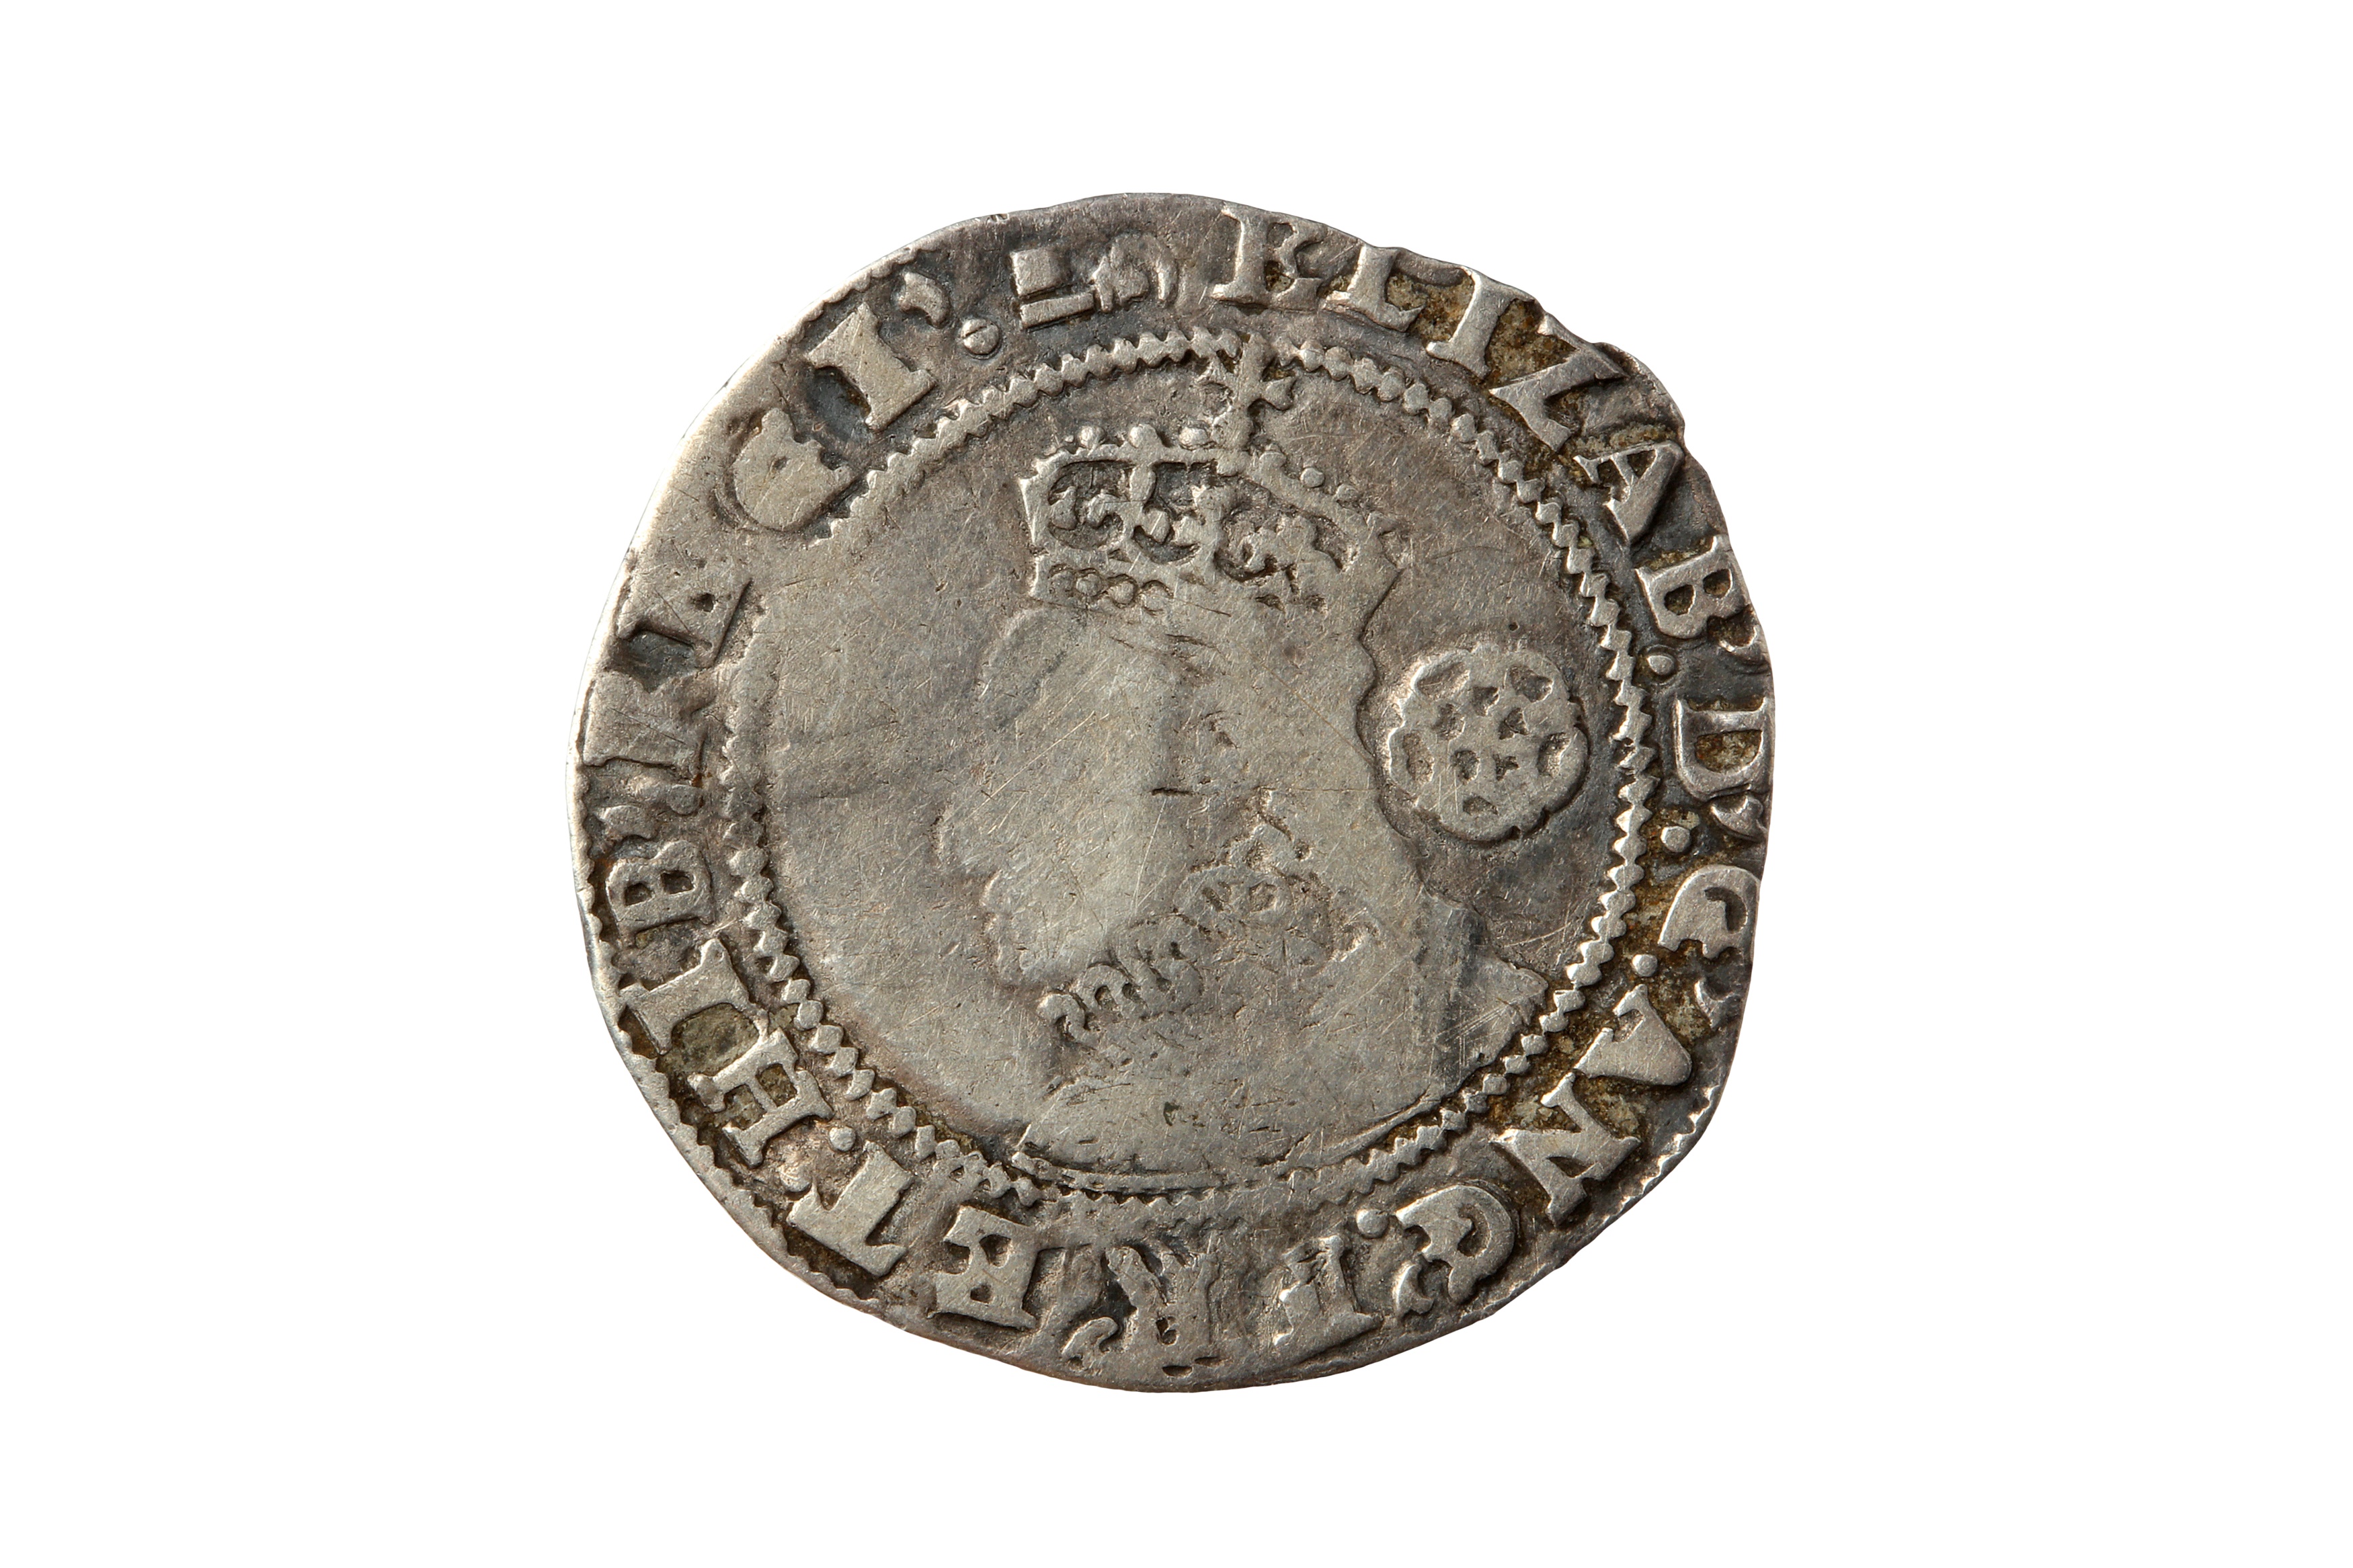 ELIZABETH I (1558 - 1603), 1596 SIXPENCE.